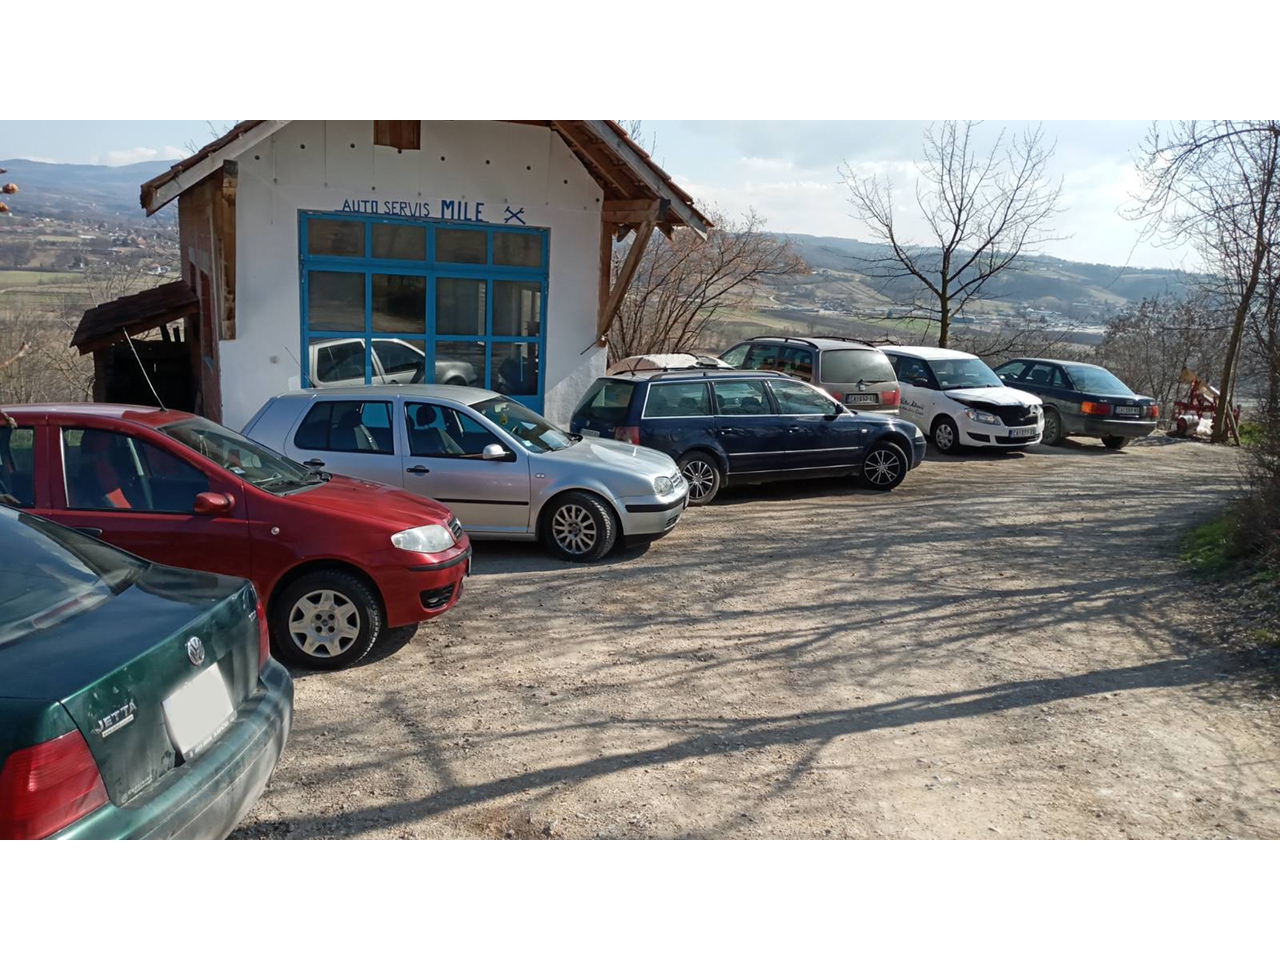 Photo 1 - CAR SERVICE MILE - Auto services, Cacak